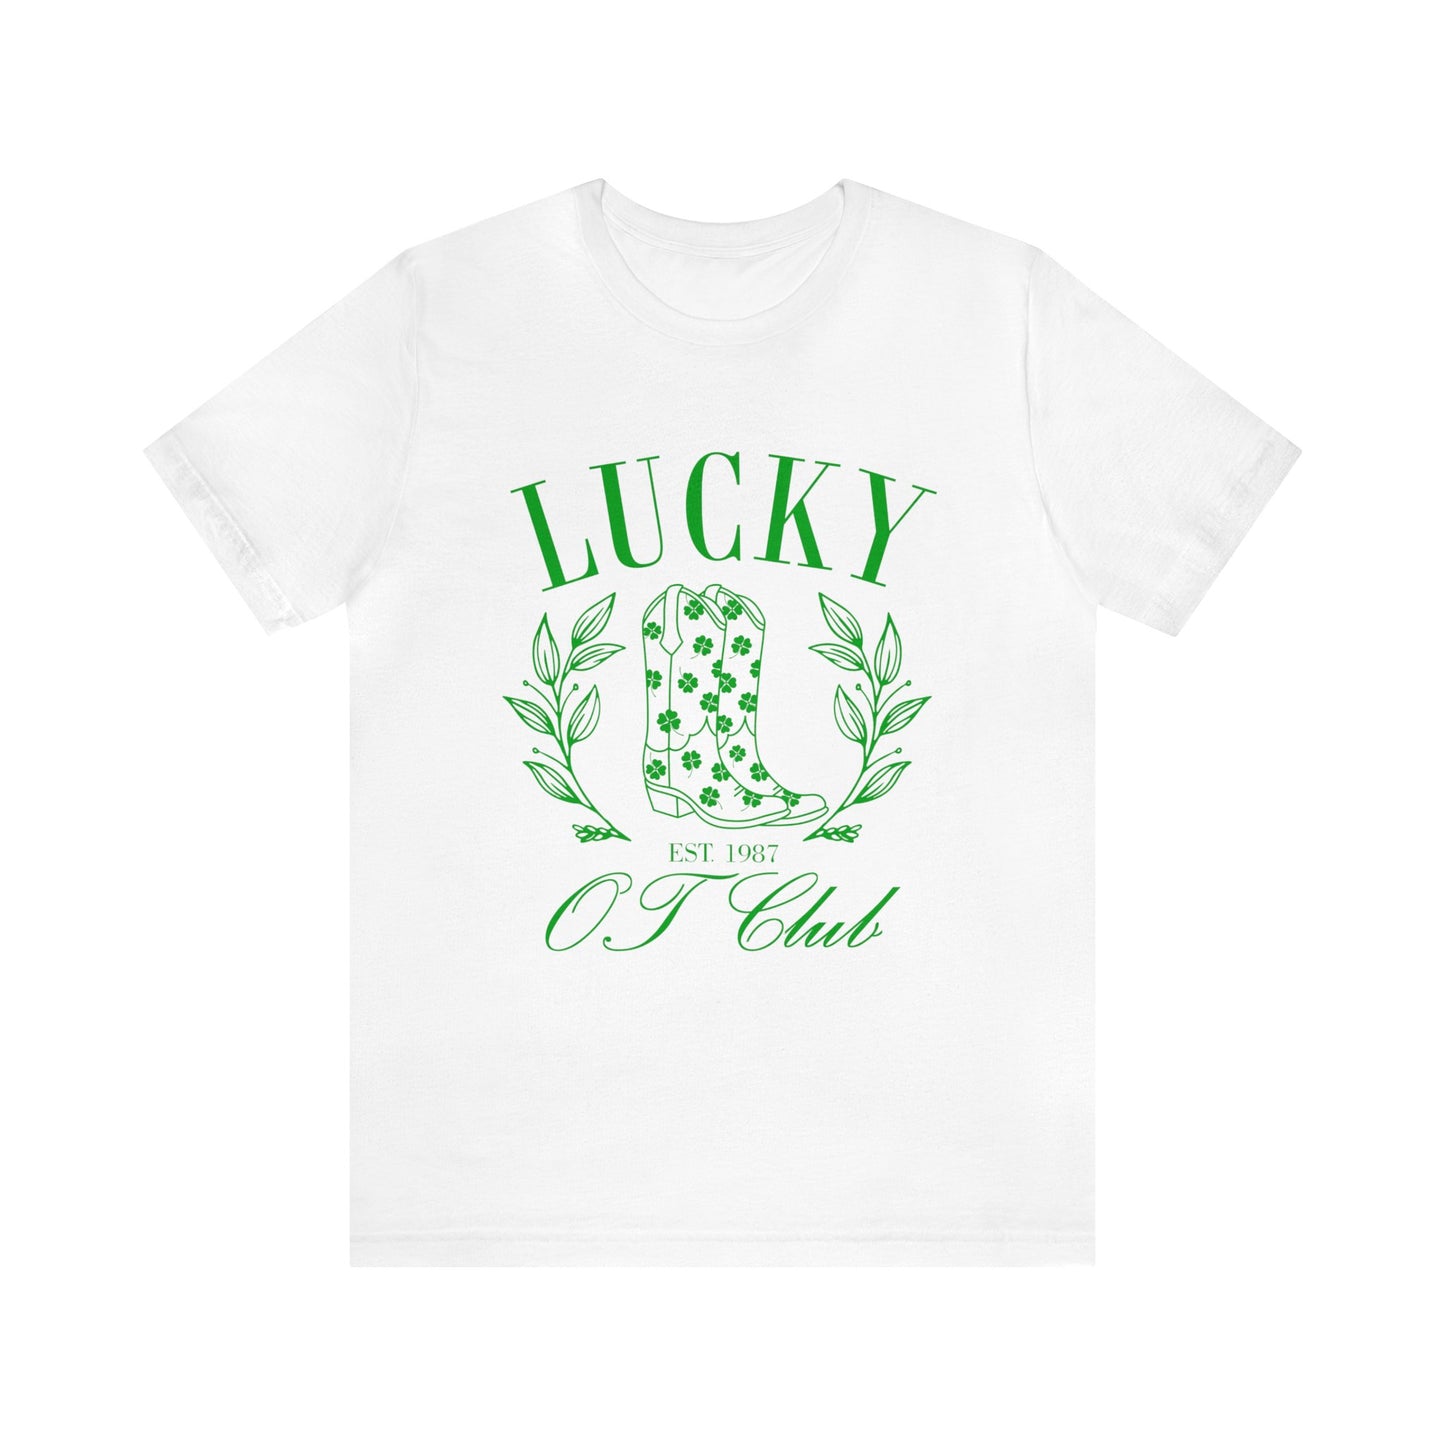 Lucky OT Club Jersey T-Shirt